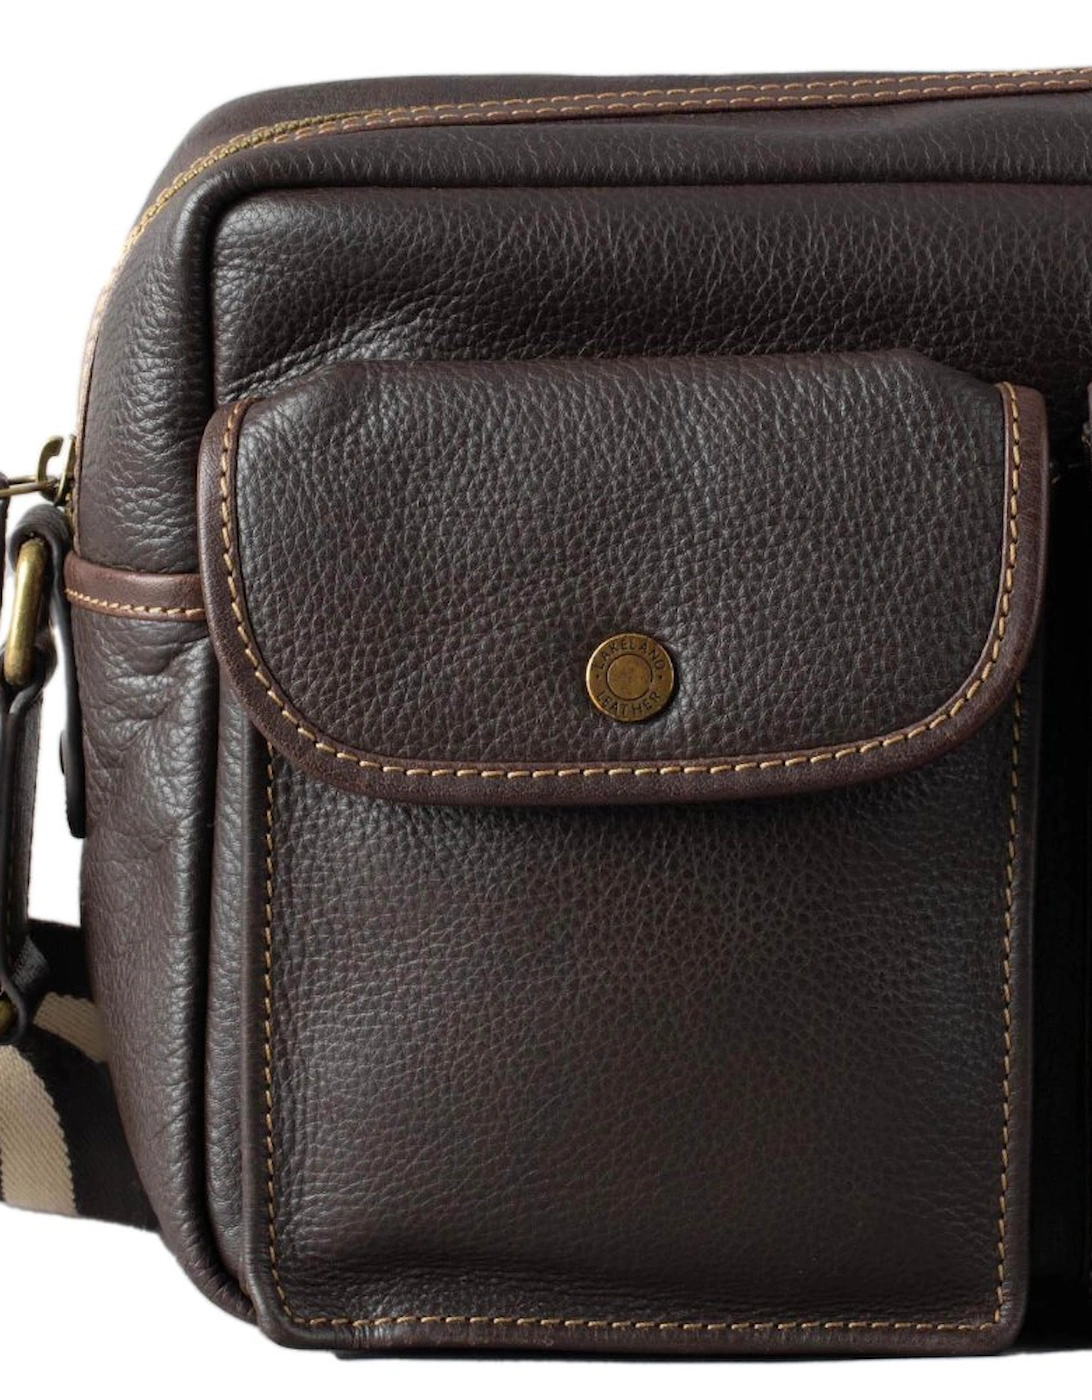 Kelsick Leather Messenger Bag